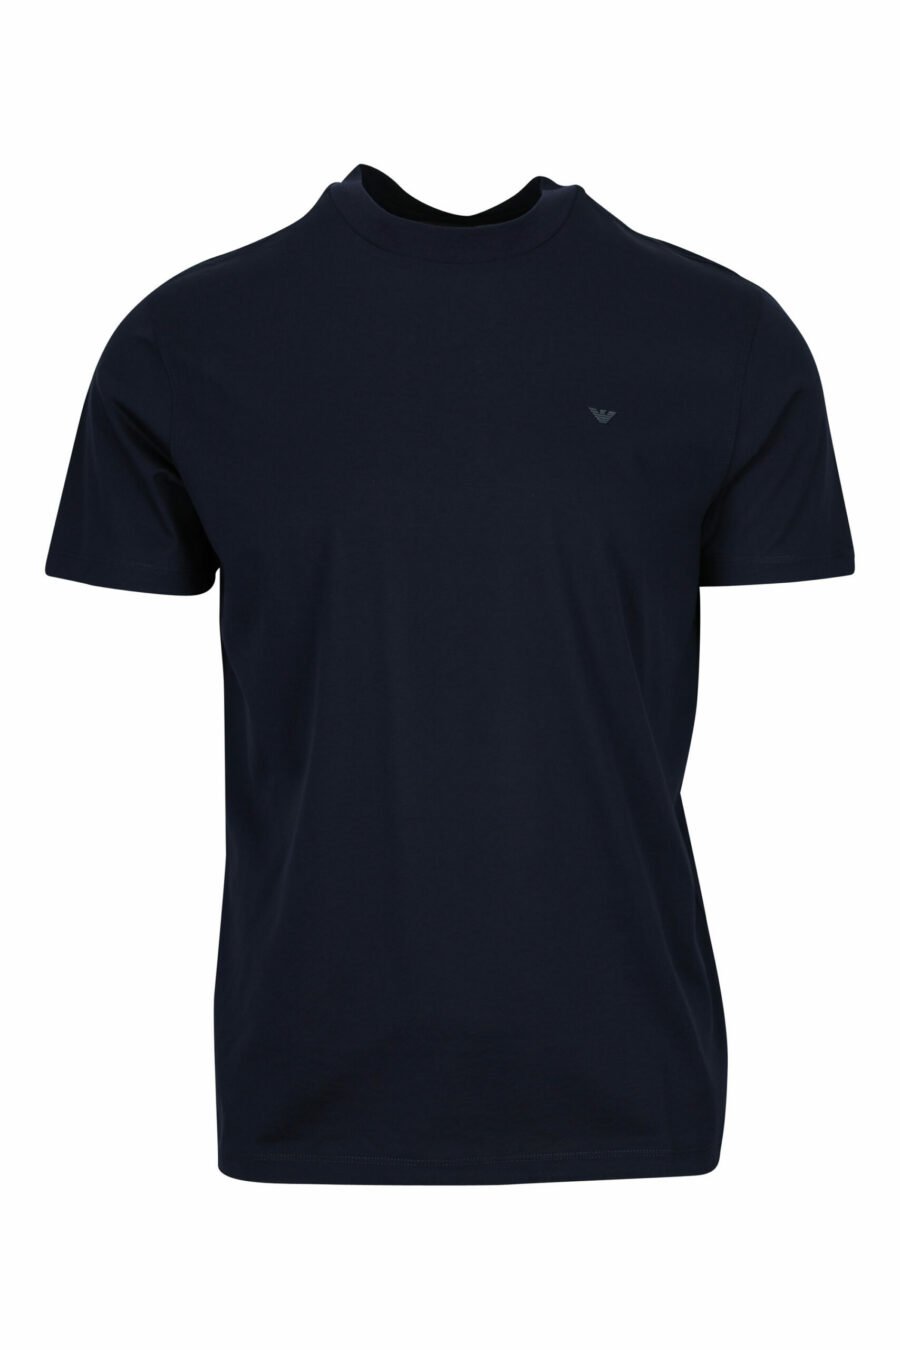 Dunkelblaues T-Shirt mit Mini-Adler-Logo - 8058997155687 skaliert